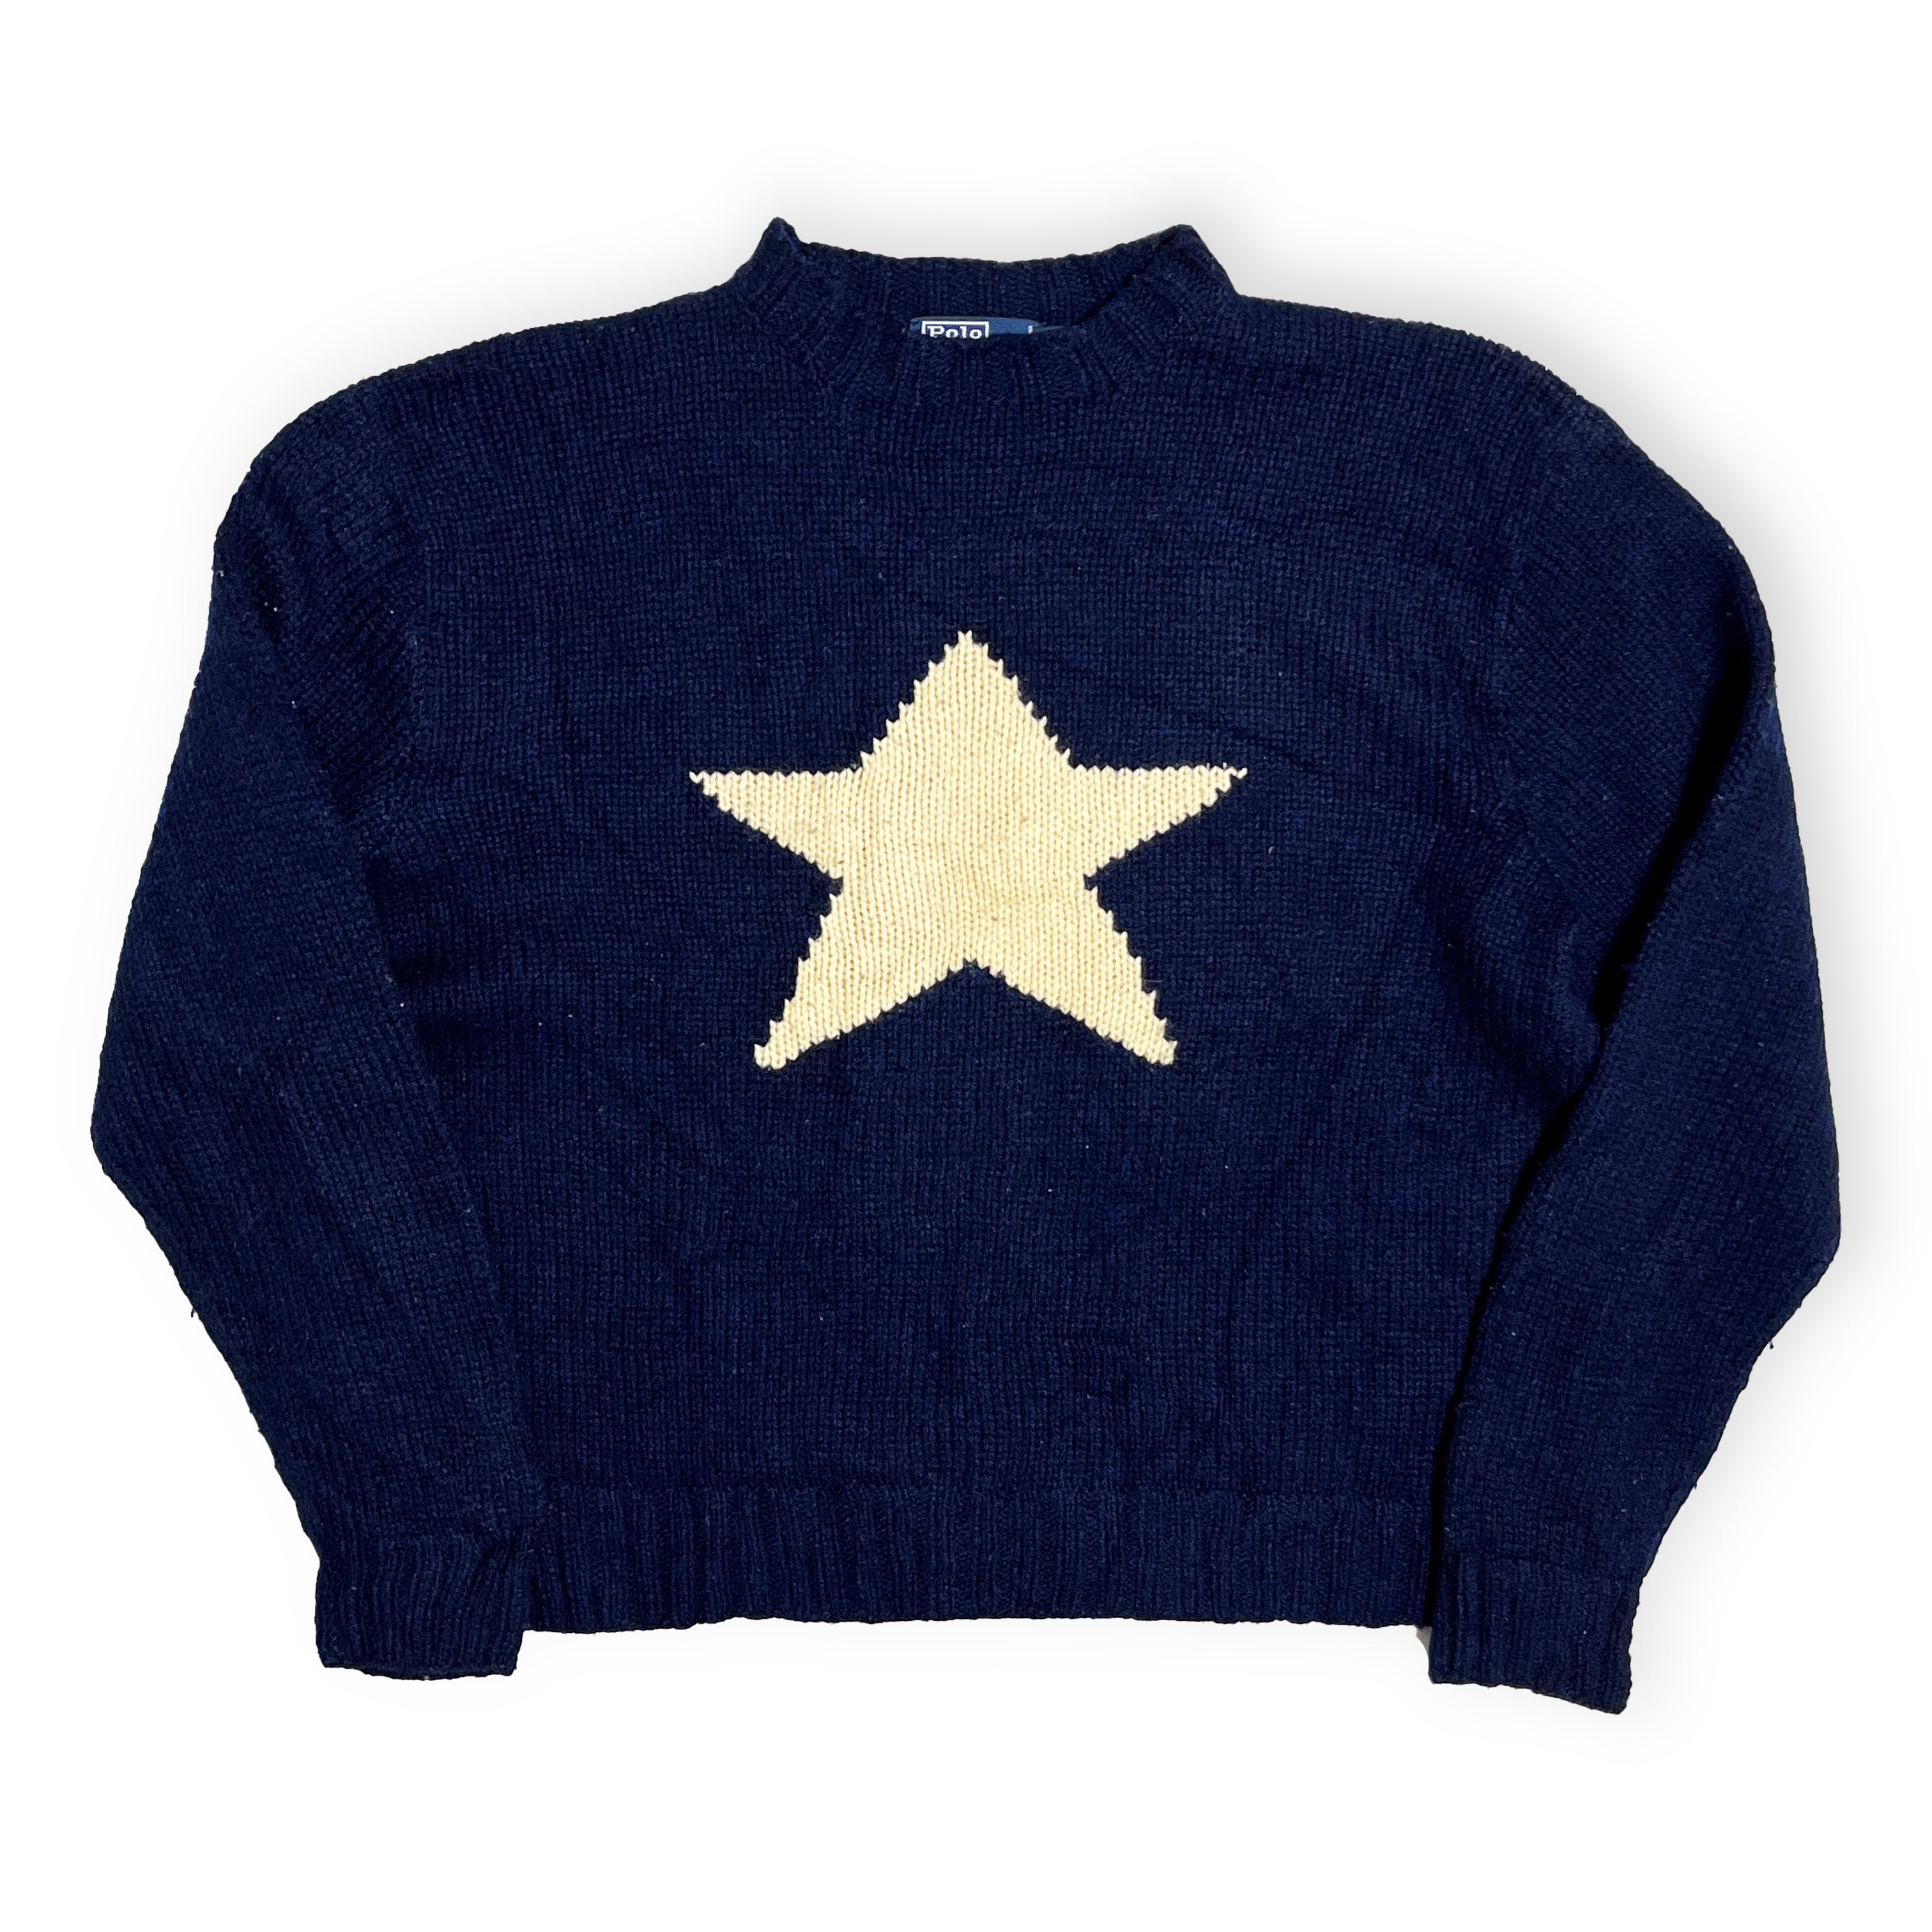 Ralph Lauren Star Knit Size (XXL)